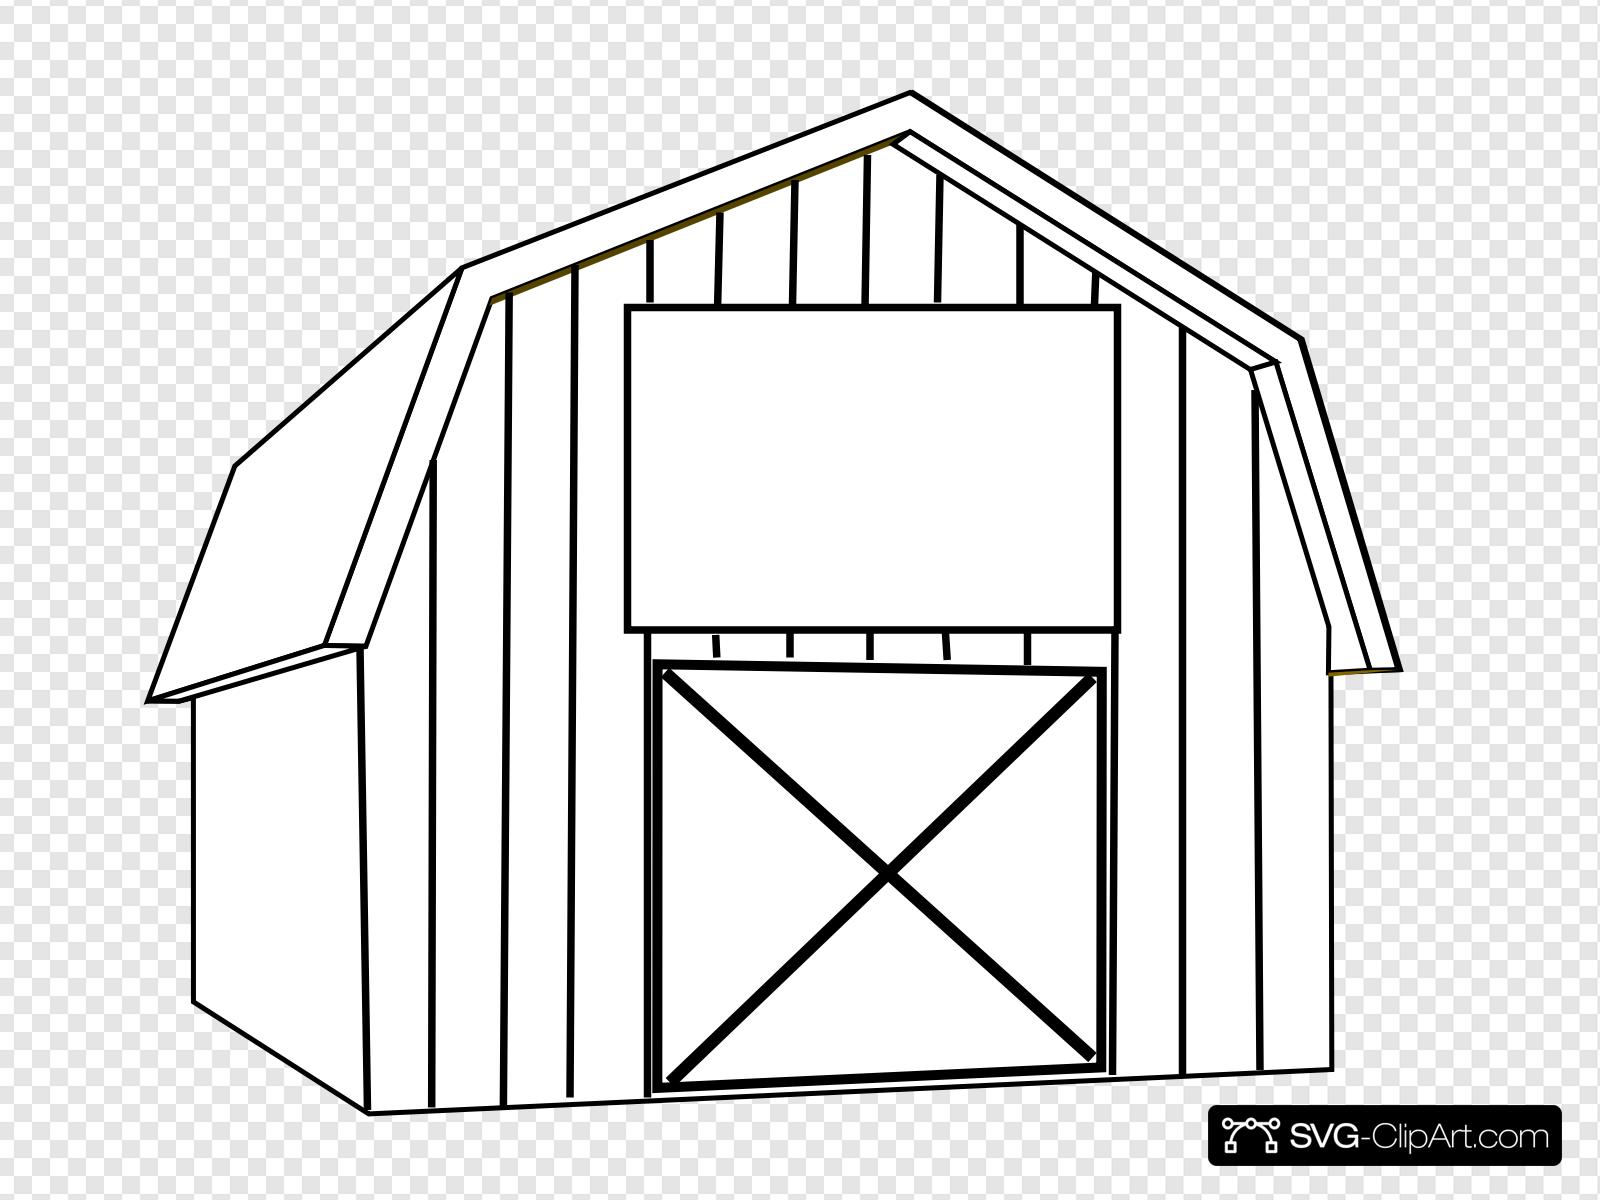 Black White Barn Clip art, Icon and SVG.